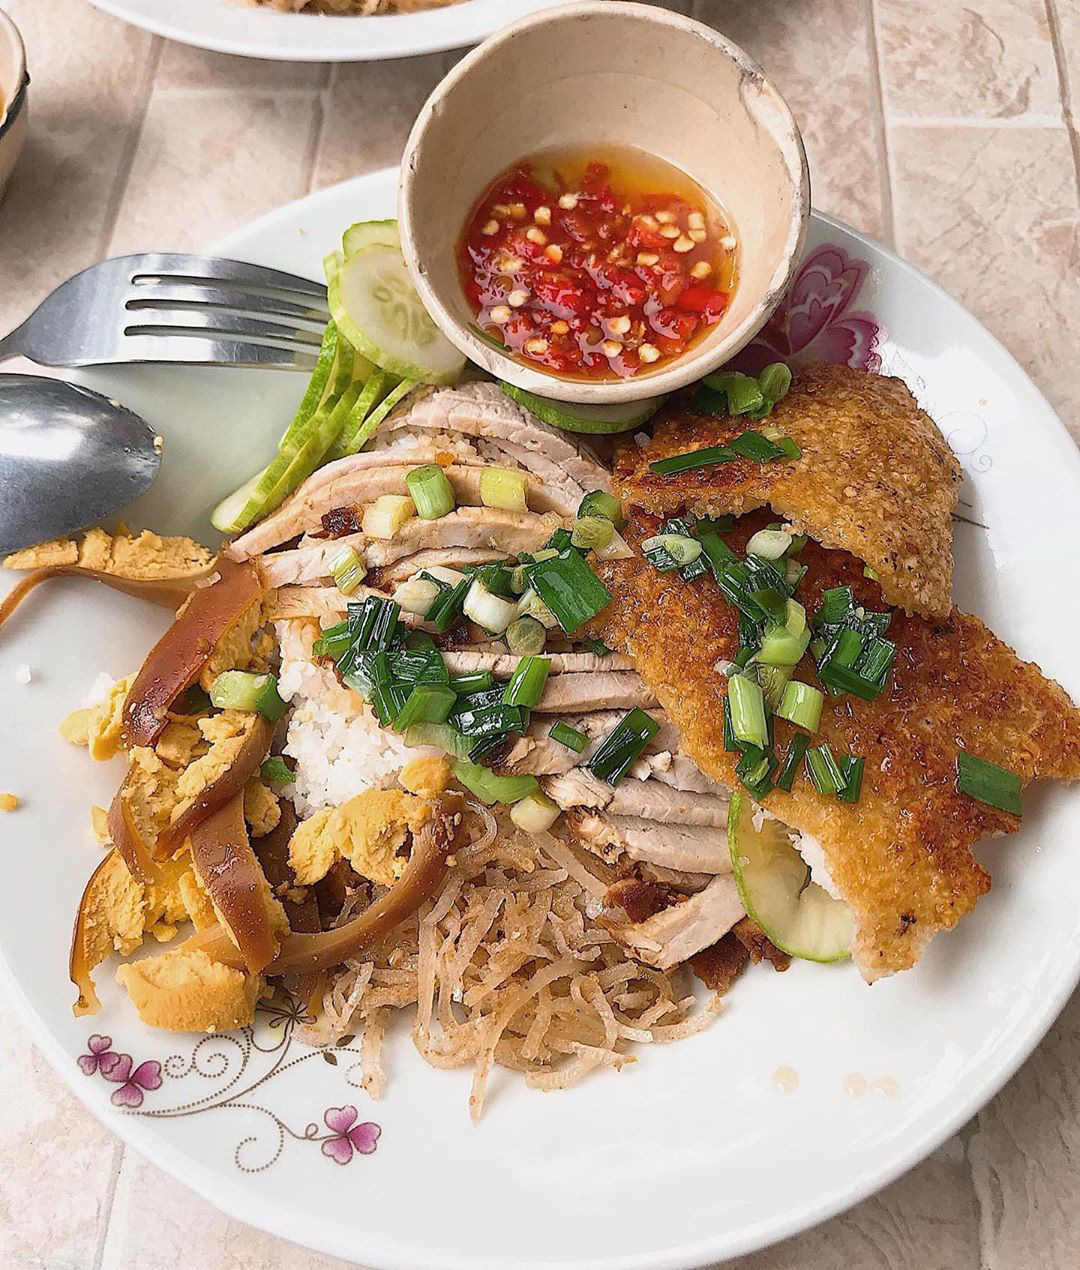 Cũng gọi là cơm tấm nhưng đặc sản nổi tiếng của Long Xuyên lại rất khác Sài Gòn, chỉ ai ăn rồi mới biết - Ảnh 9.